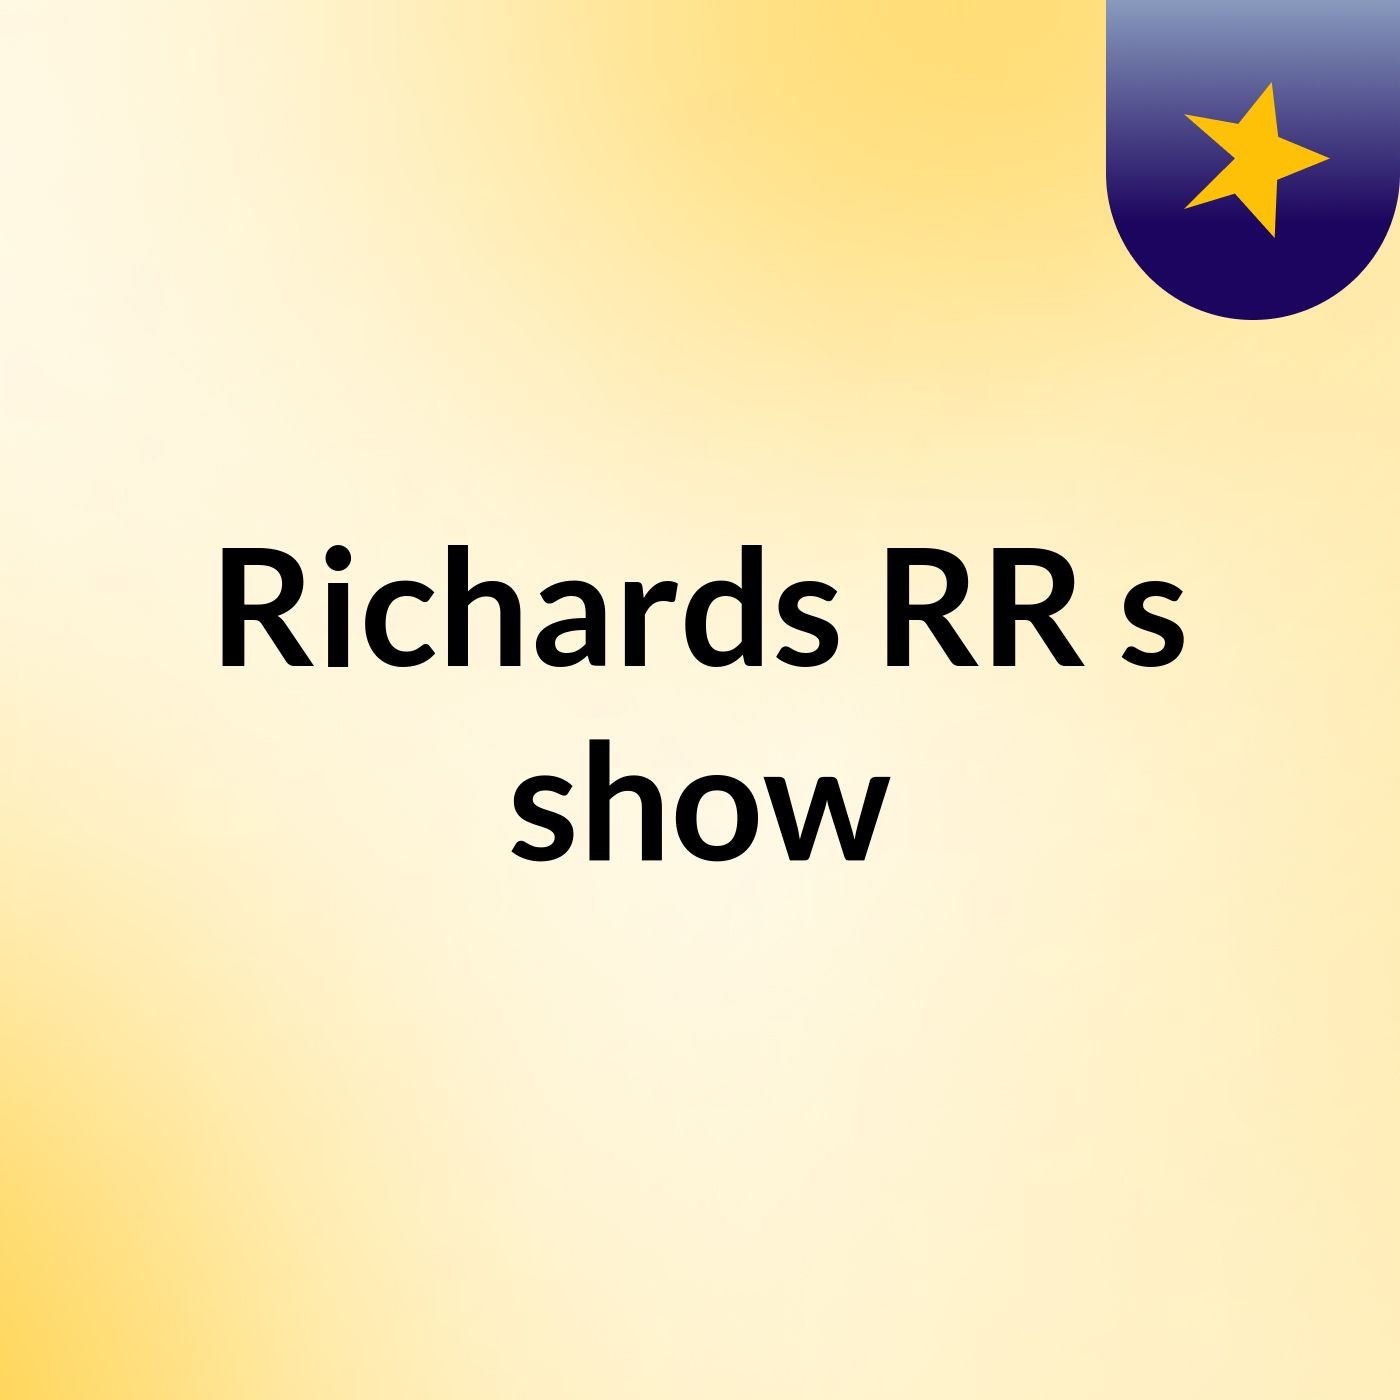 Richards RR's show